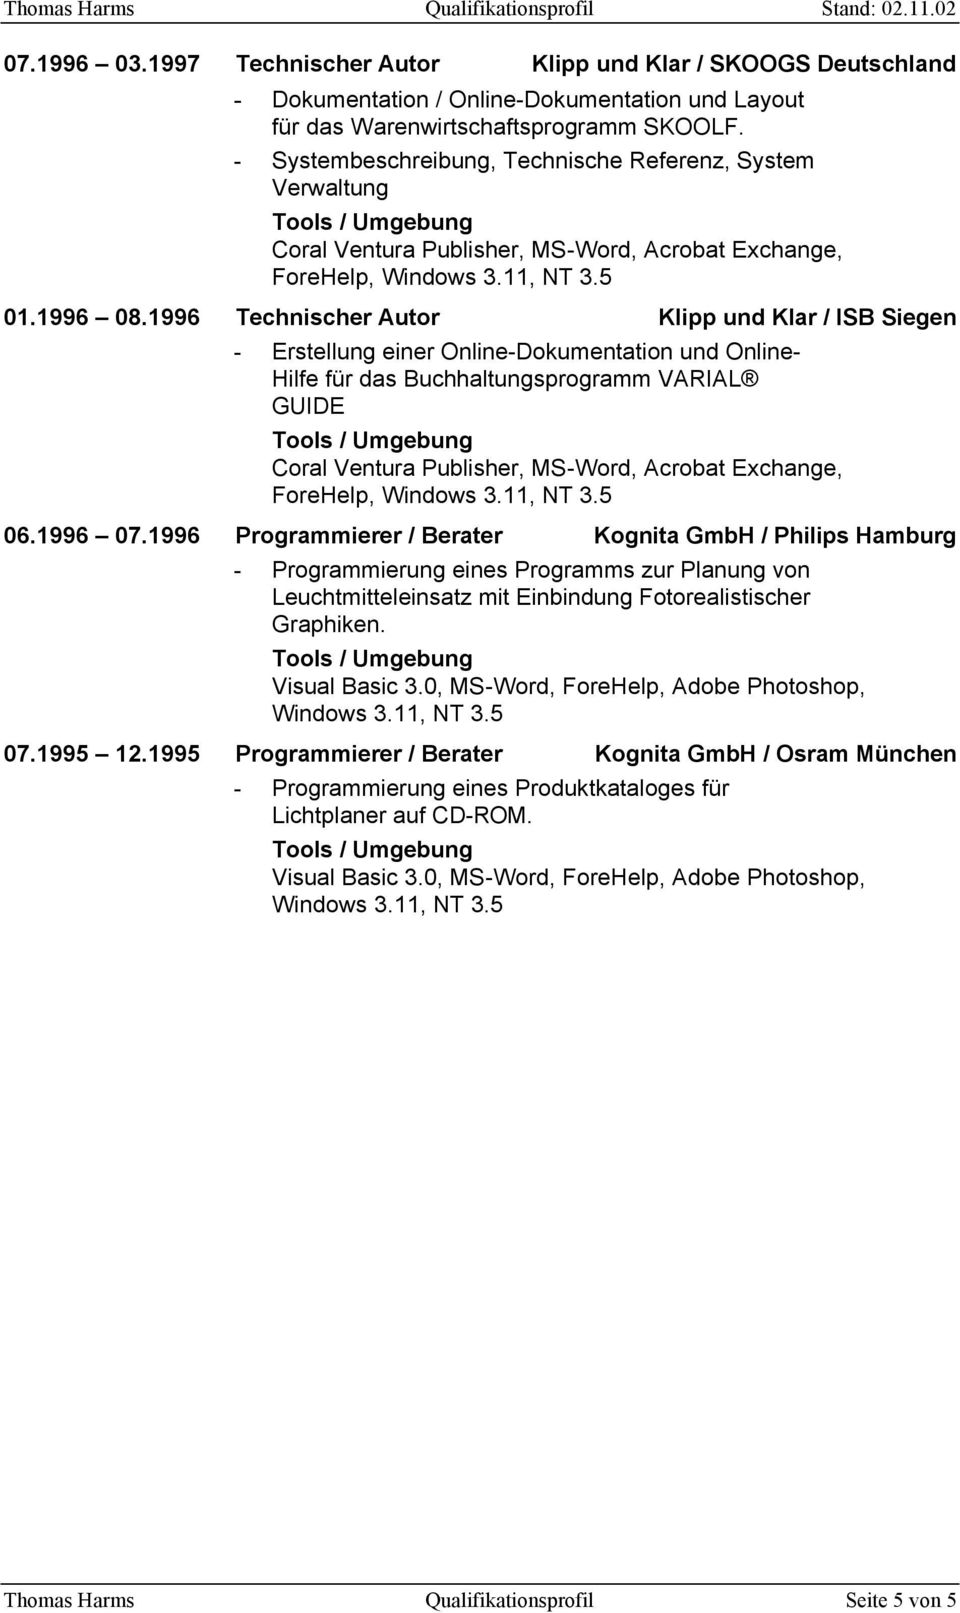 1996 Technischer Autor Klipp und Klar / ISB Siegen - Erstellung einer Online-Dokumentation und Online- Hilfe für das Buchhaltungsprogramm VARIAL GUIDE Coral Ventura Publisher, MS-Word, Acrobat